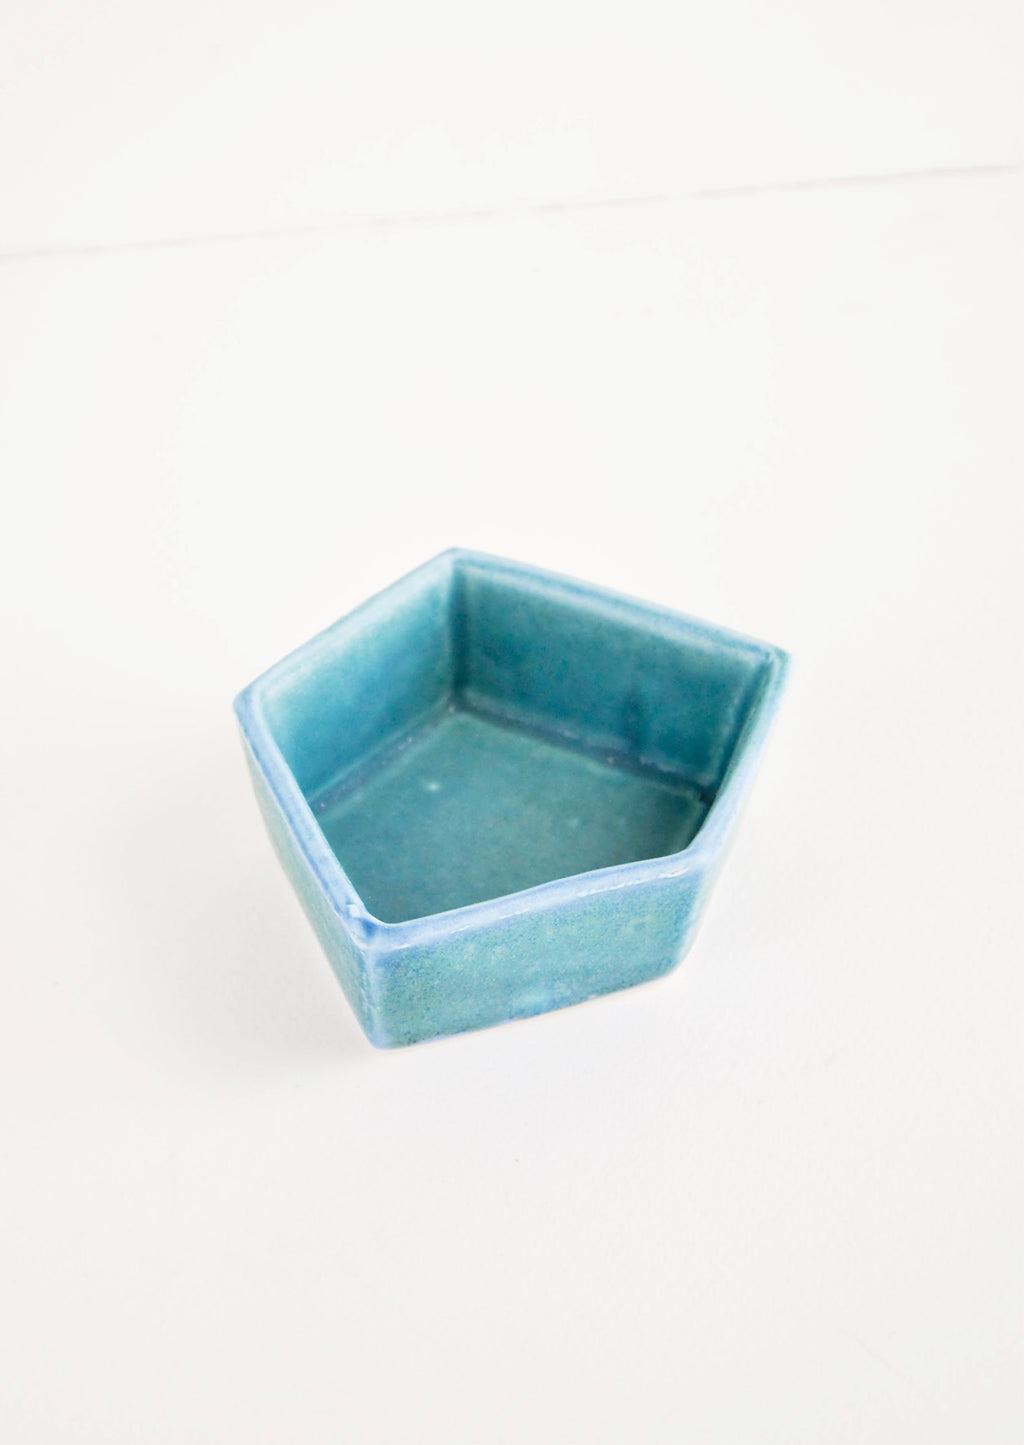 Aquatic: Small Geometric Ceramic Dish in Turquoise - LEIF